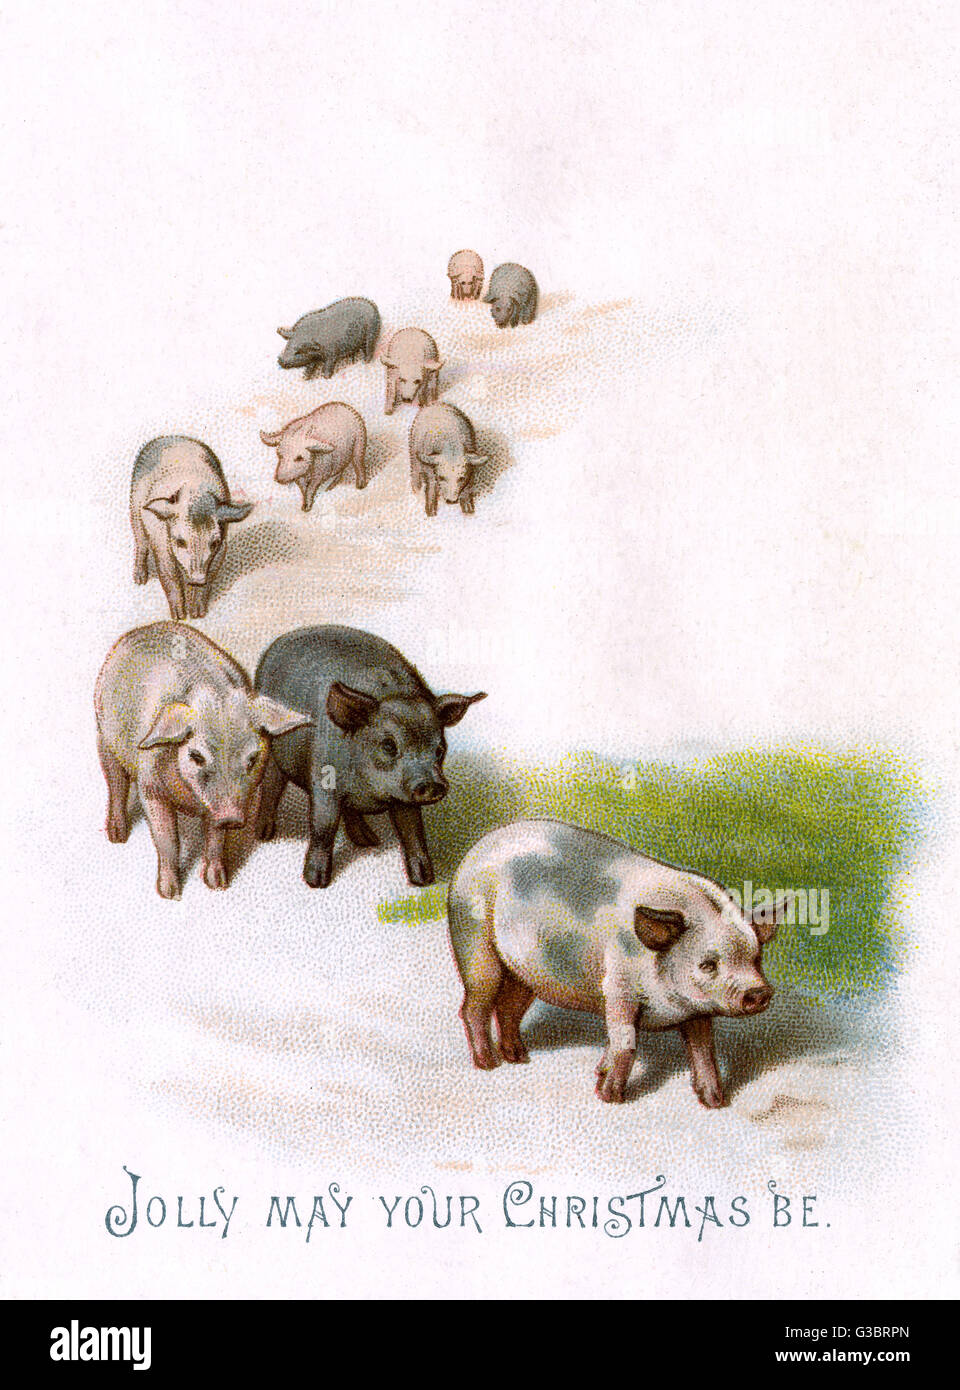 Los cerdos al trote después de uno a otro con un saludo de Navidad - Jolly Mayo su Navidad. Fecha: c.1890 Foto de stock